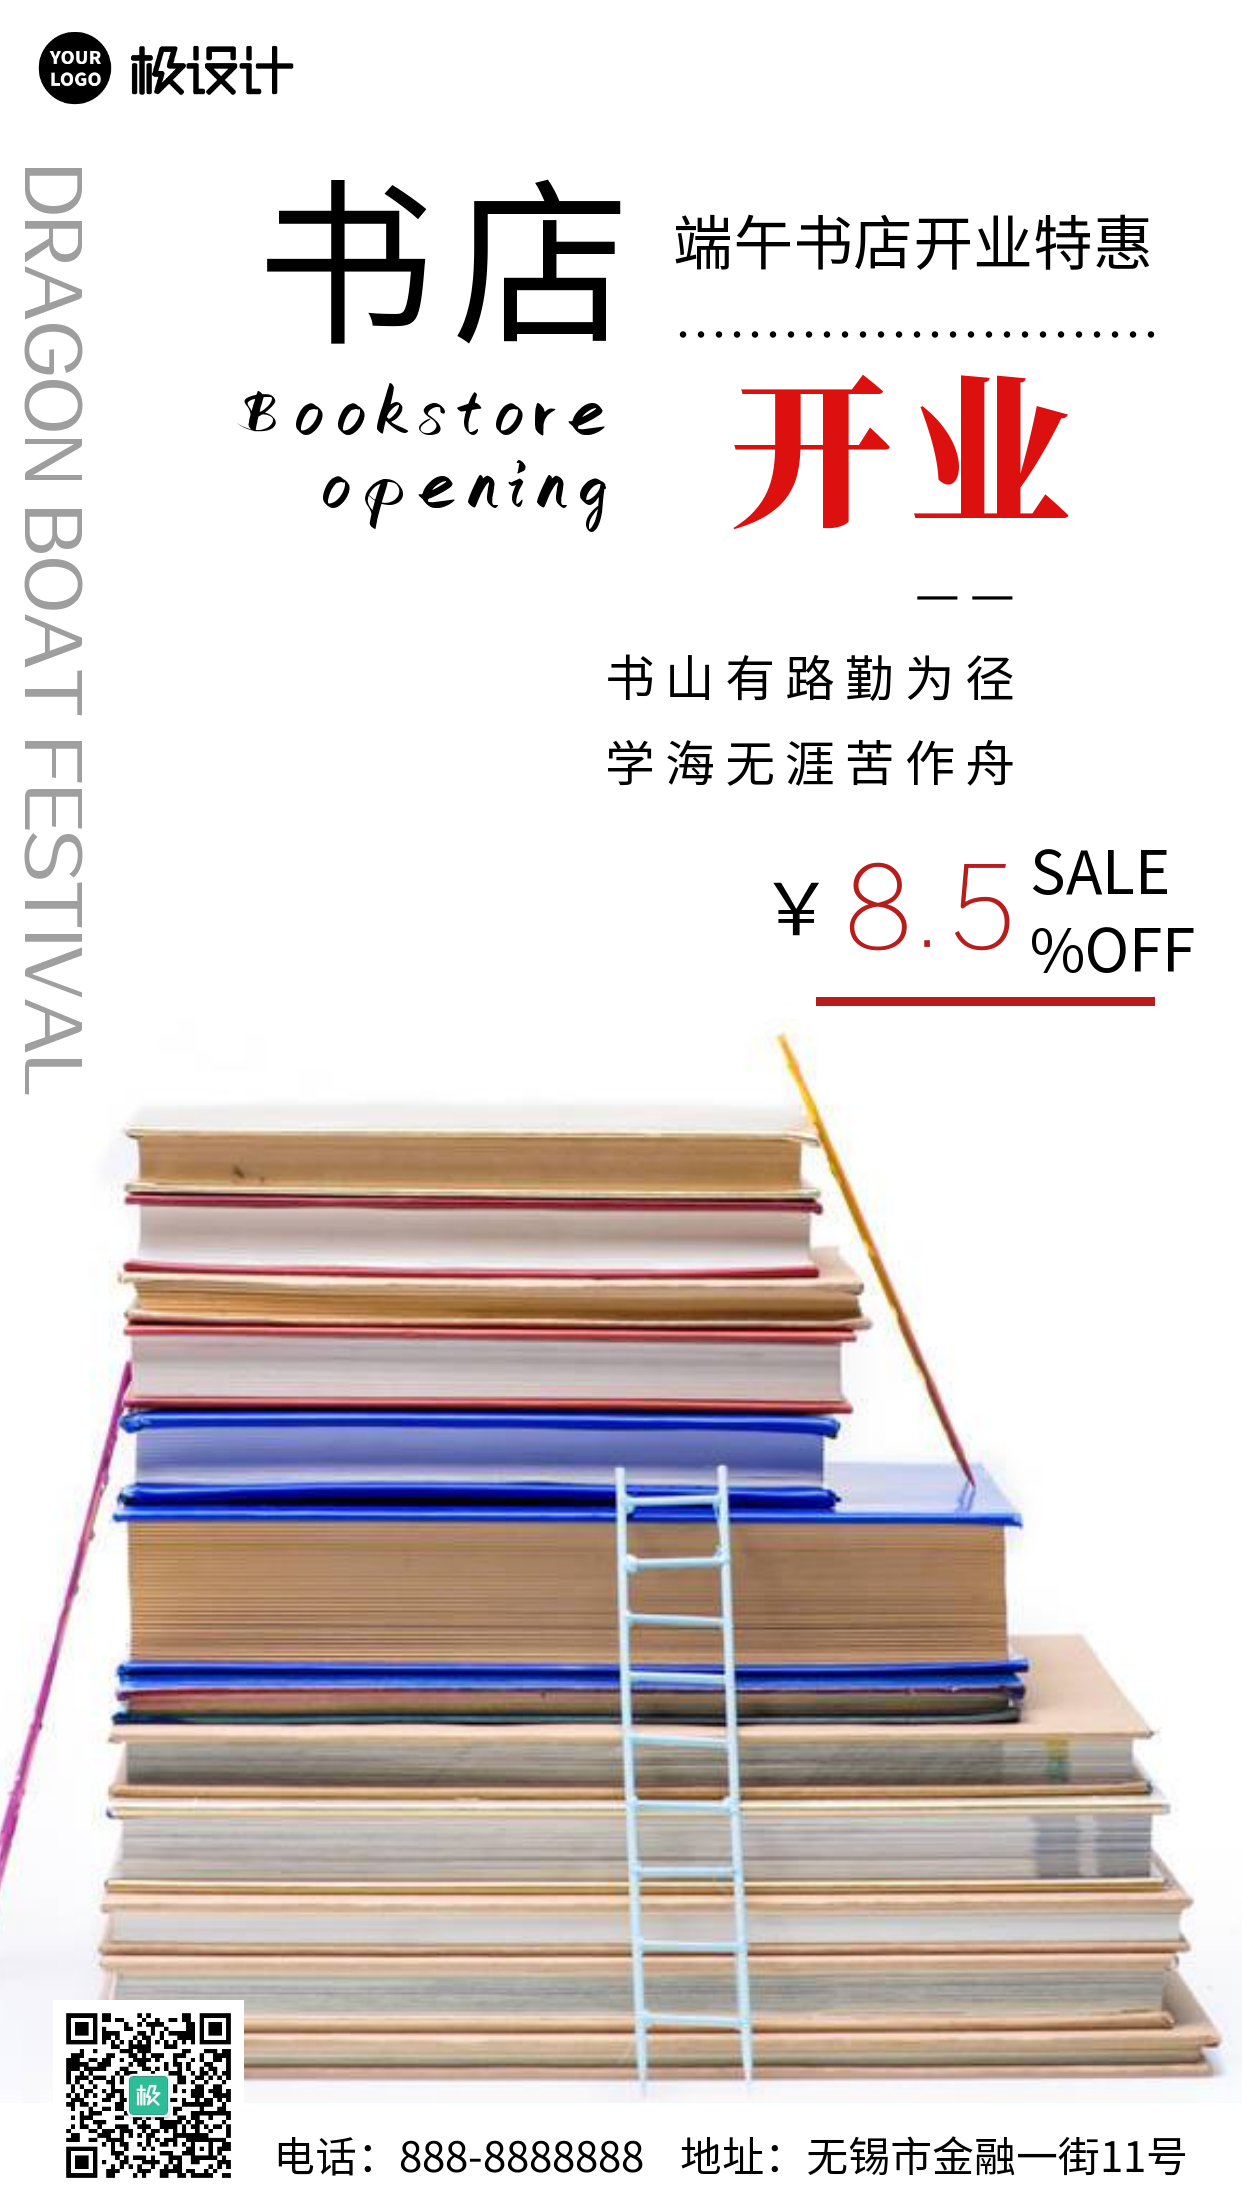 端午书店开业特惠宣传促销白色简约风摄影图海报-